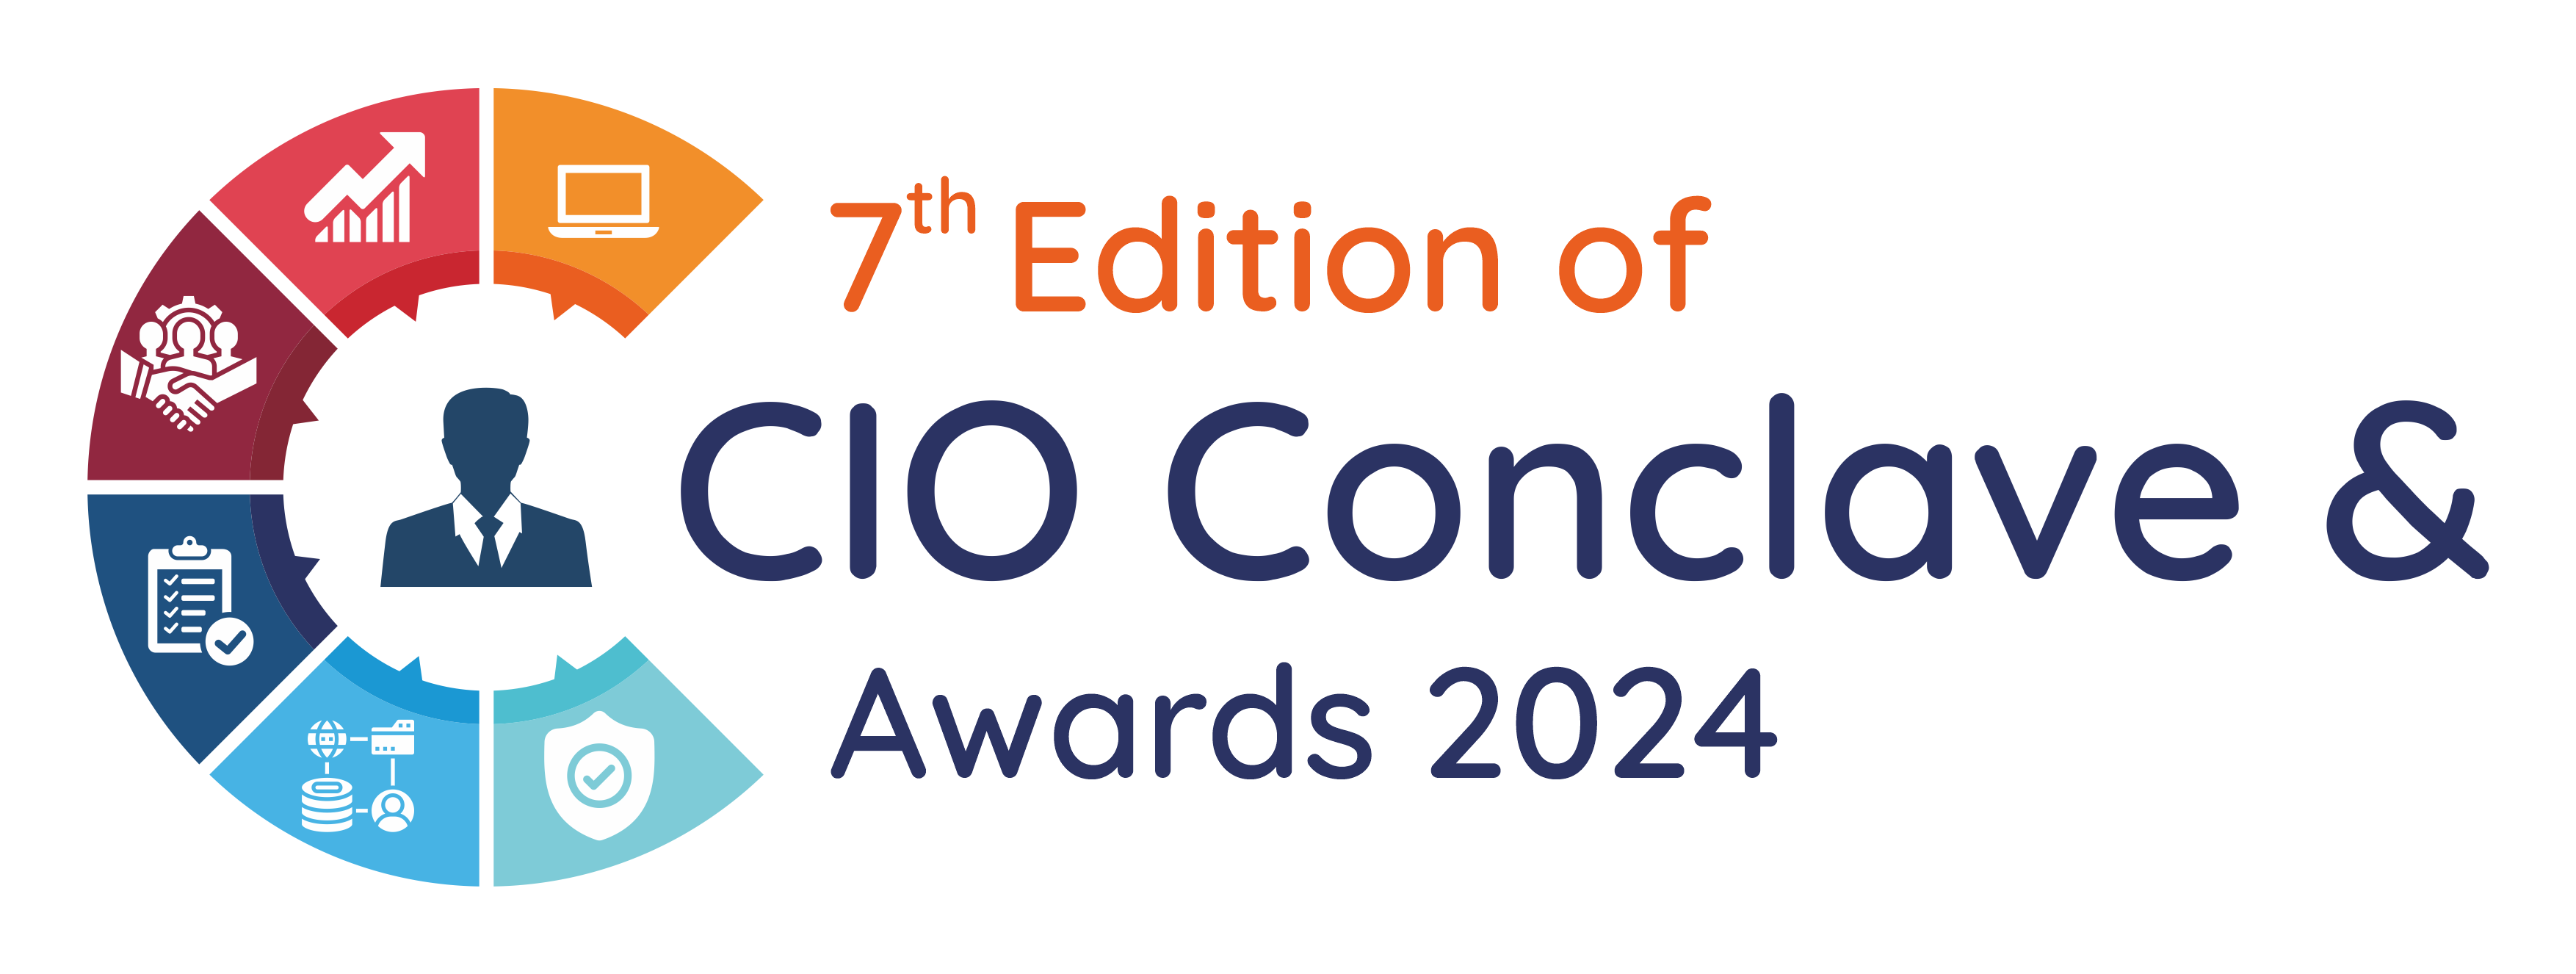 7th Edition CIO Conclave & Awards 2024